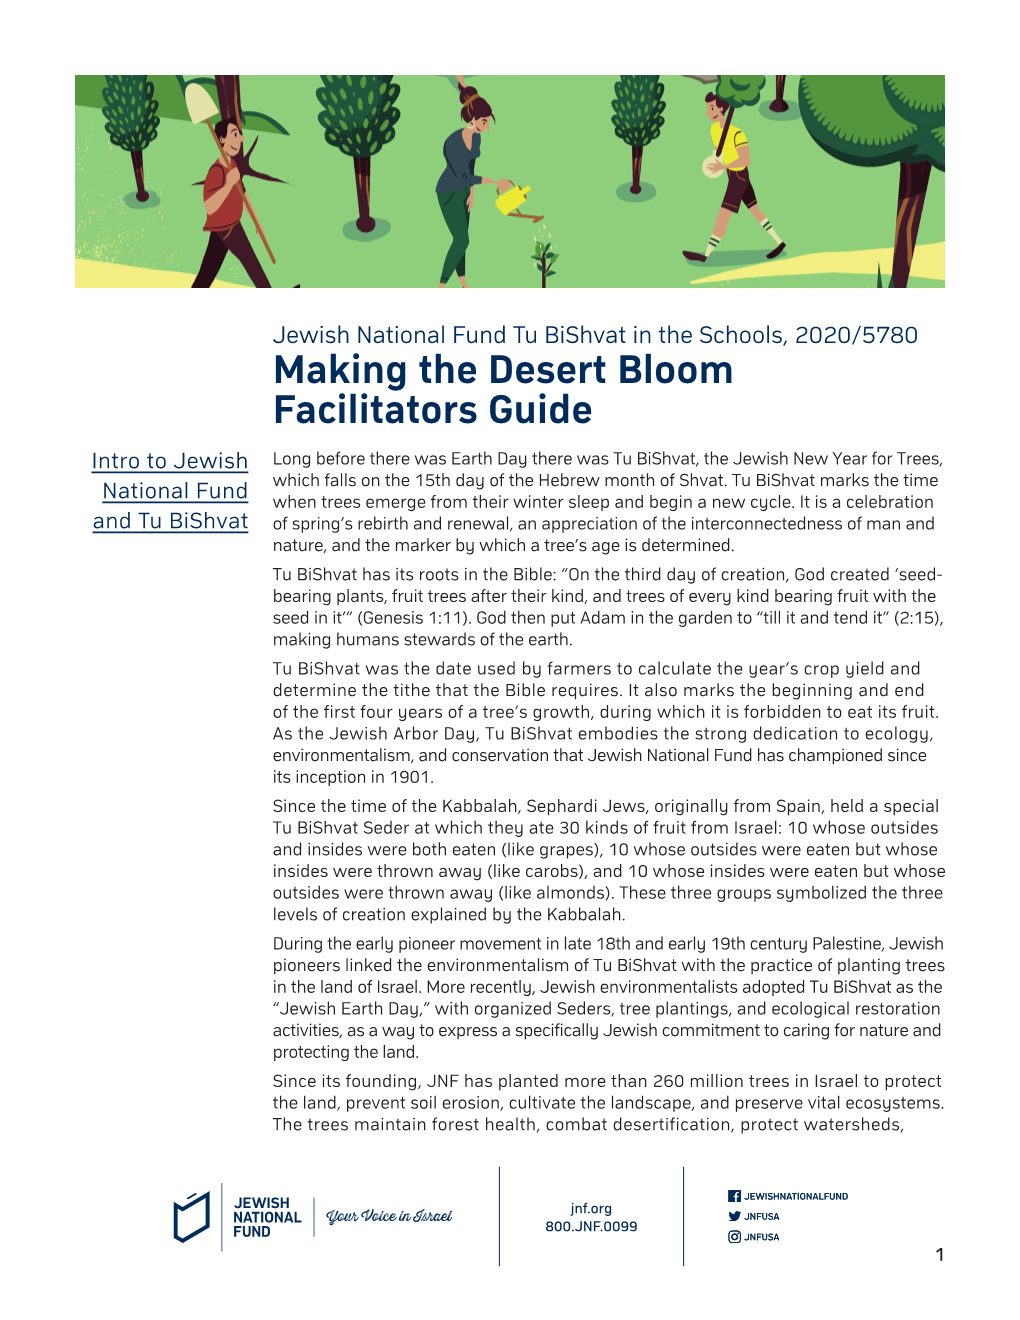 Making the Desert Bloom Facilitators Guide